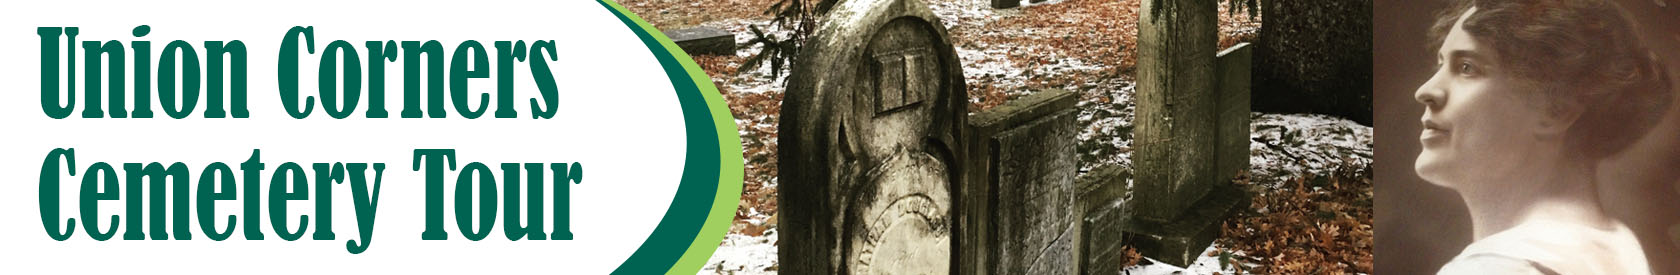 Union Corners Cemetery Tour: Odd Deaths & Unique Markers